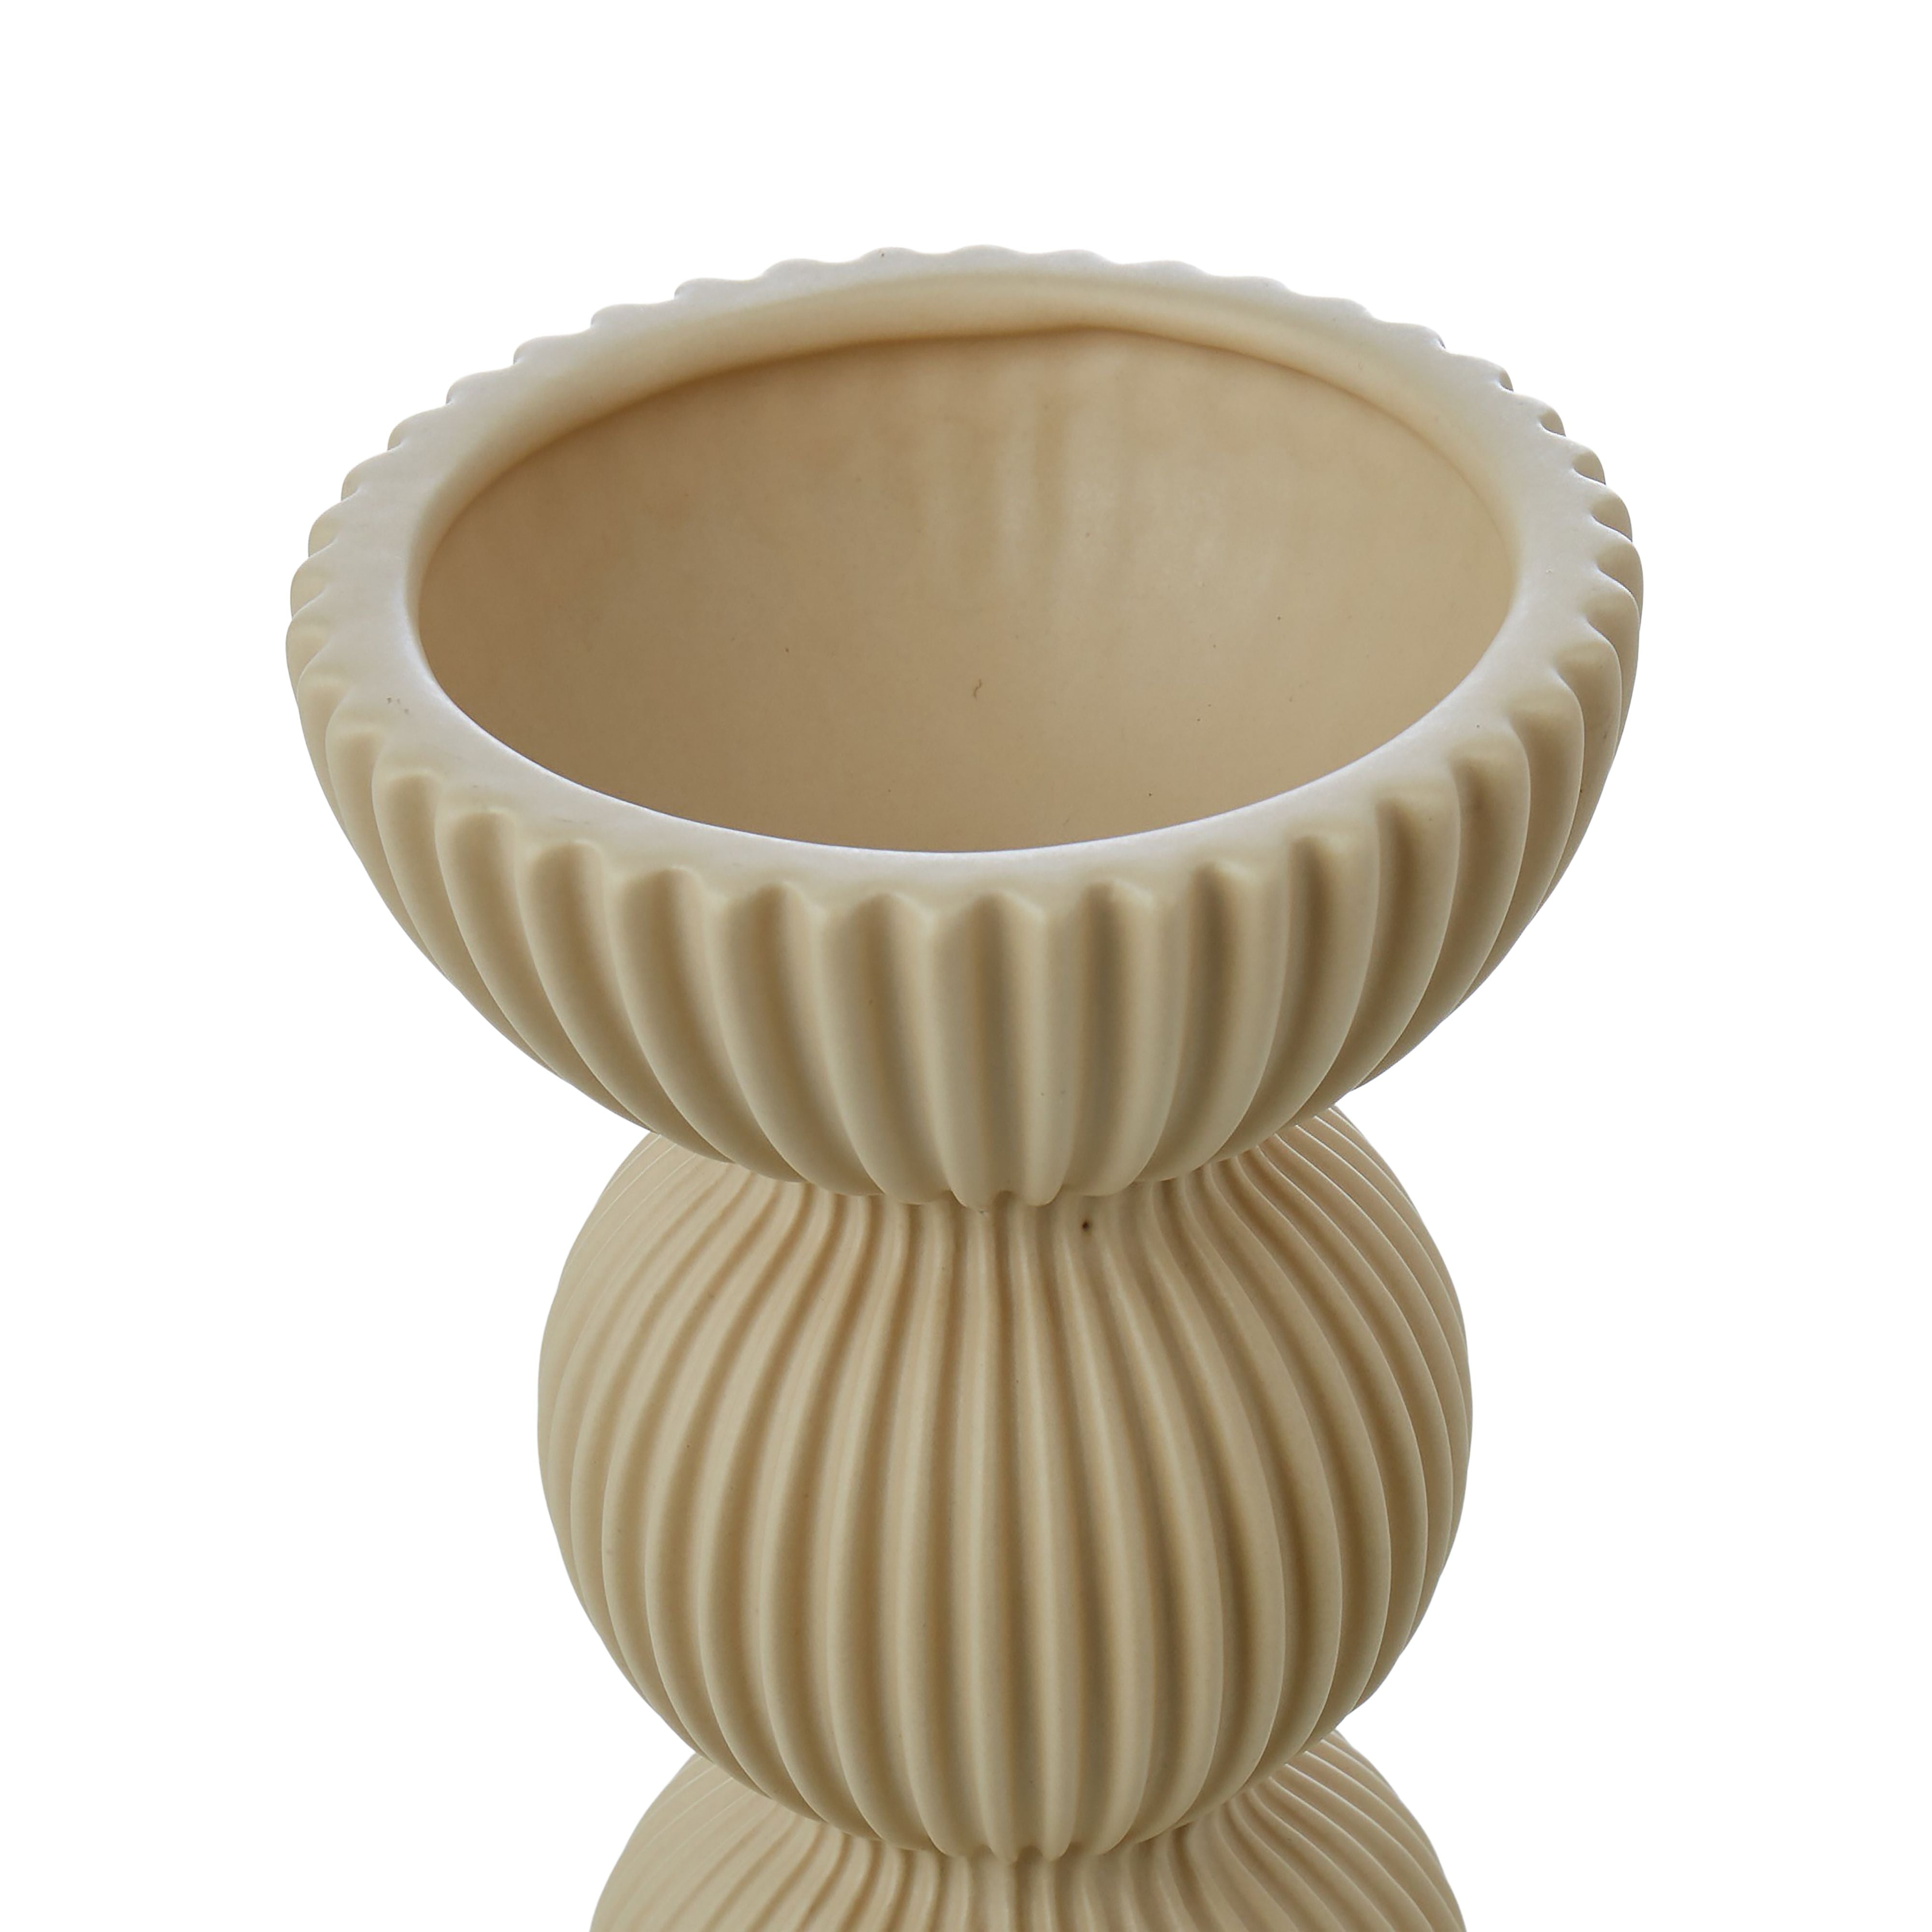 Decorative Ceramic Vessel 25.5cm - Antique White-Pots, Planters & Vases-Emporium-The Bay Room